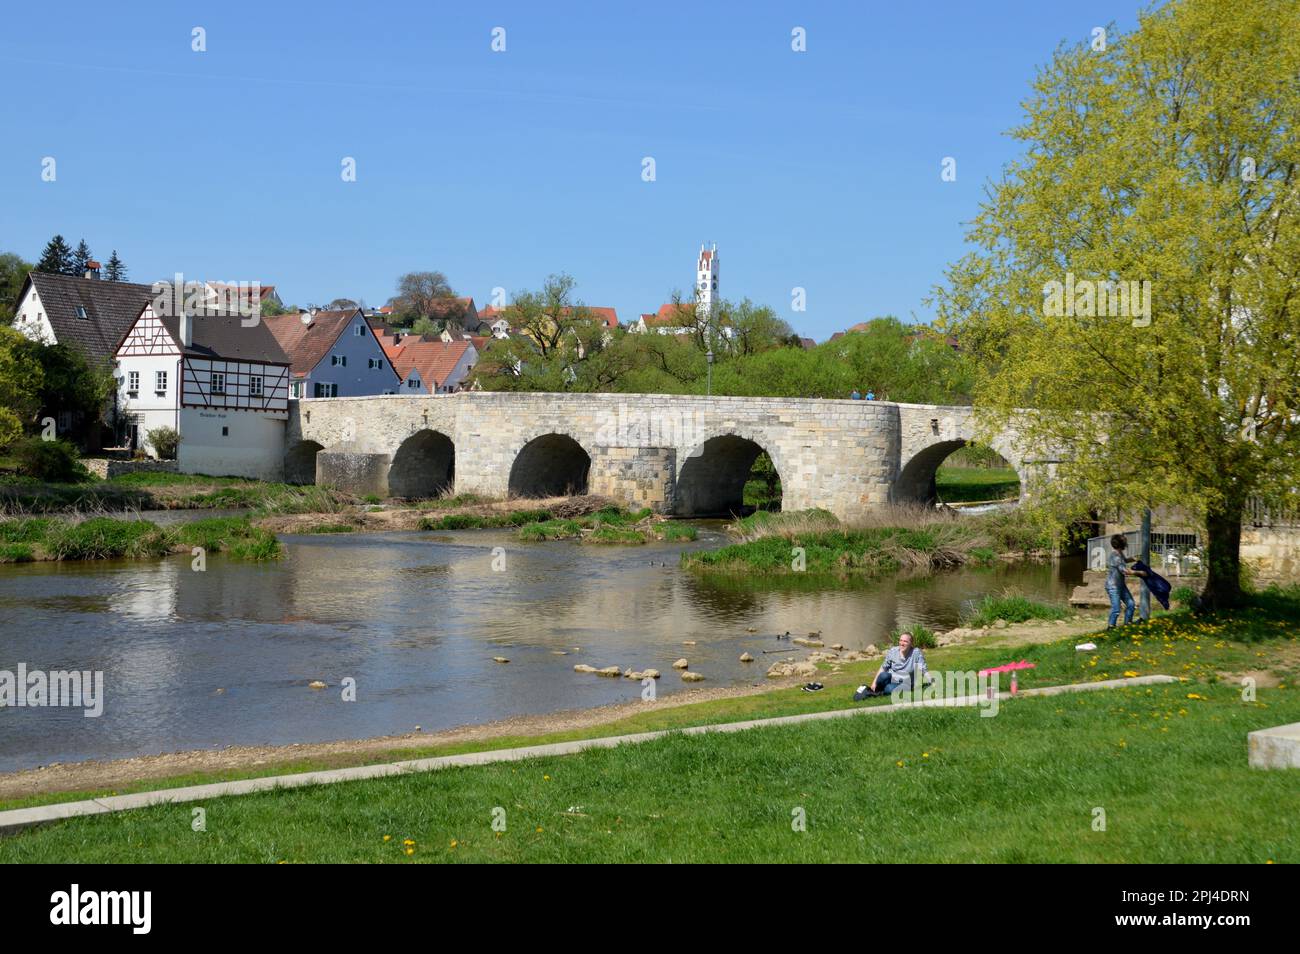 Germania, Baviera, Swabia, Harburg: Il vecchio ponte di pietra sul fiume Wörnitz. Foto Stock